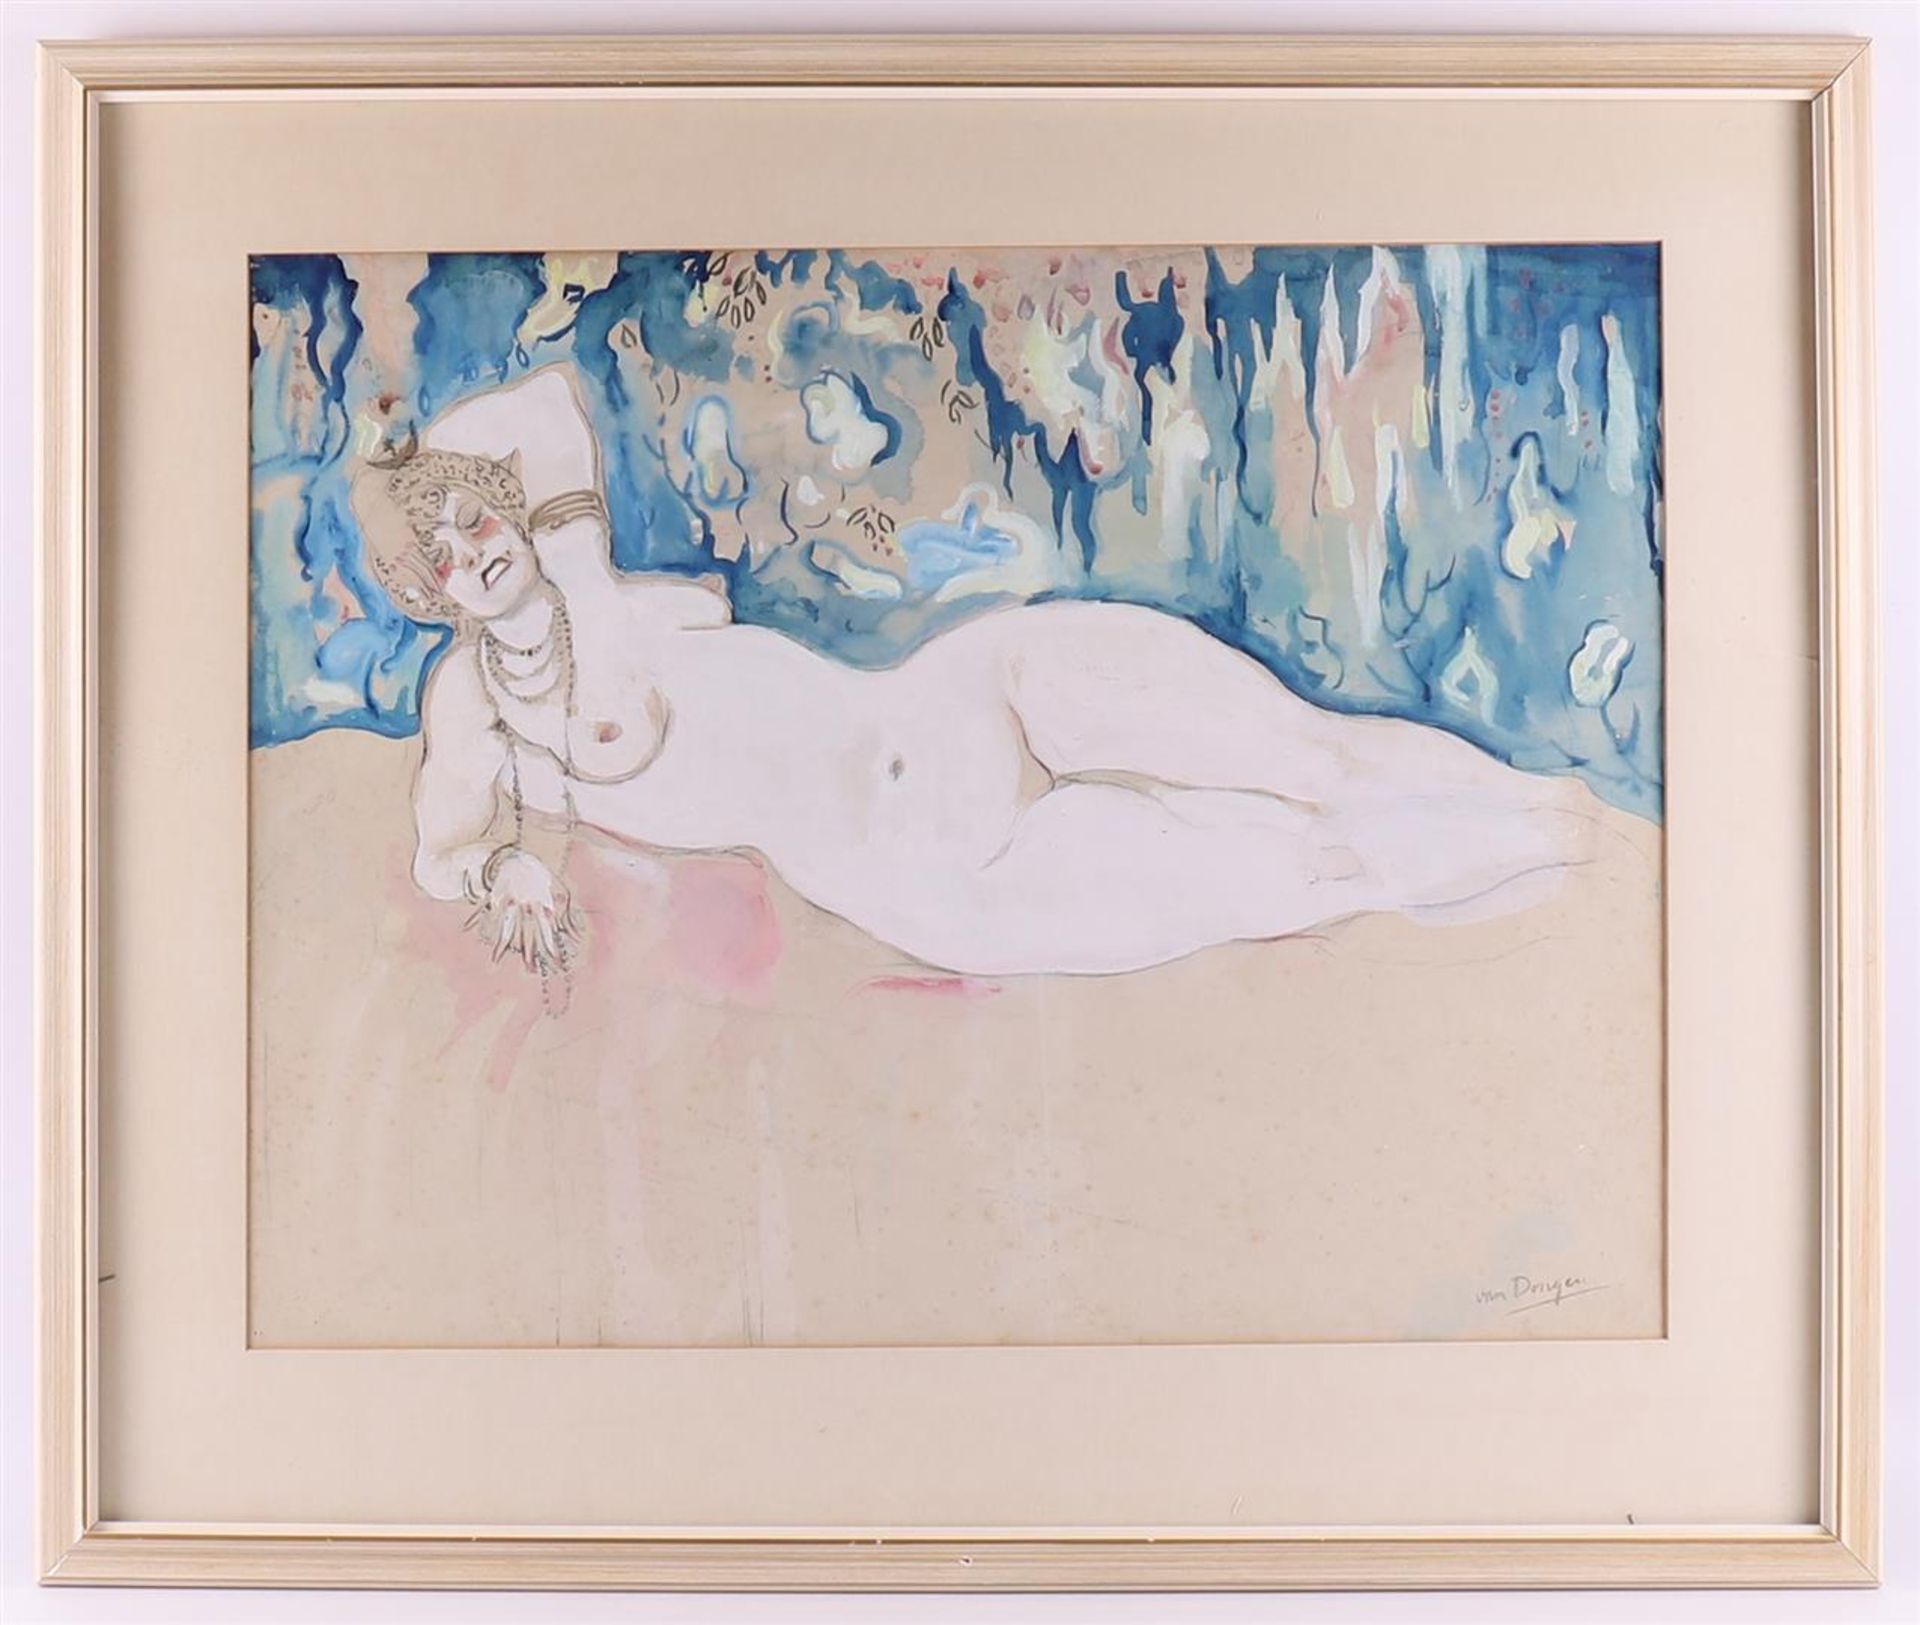 Dongen van, (bears signature) 'Female lying naked',